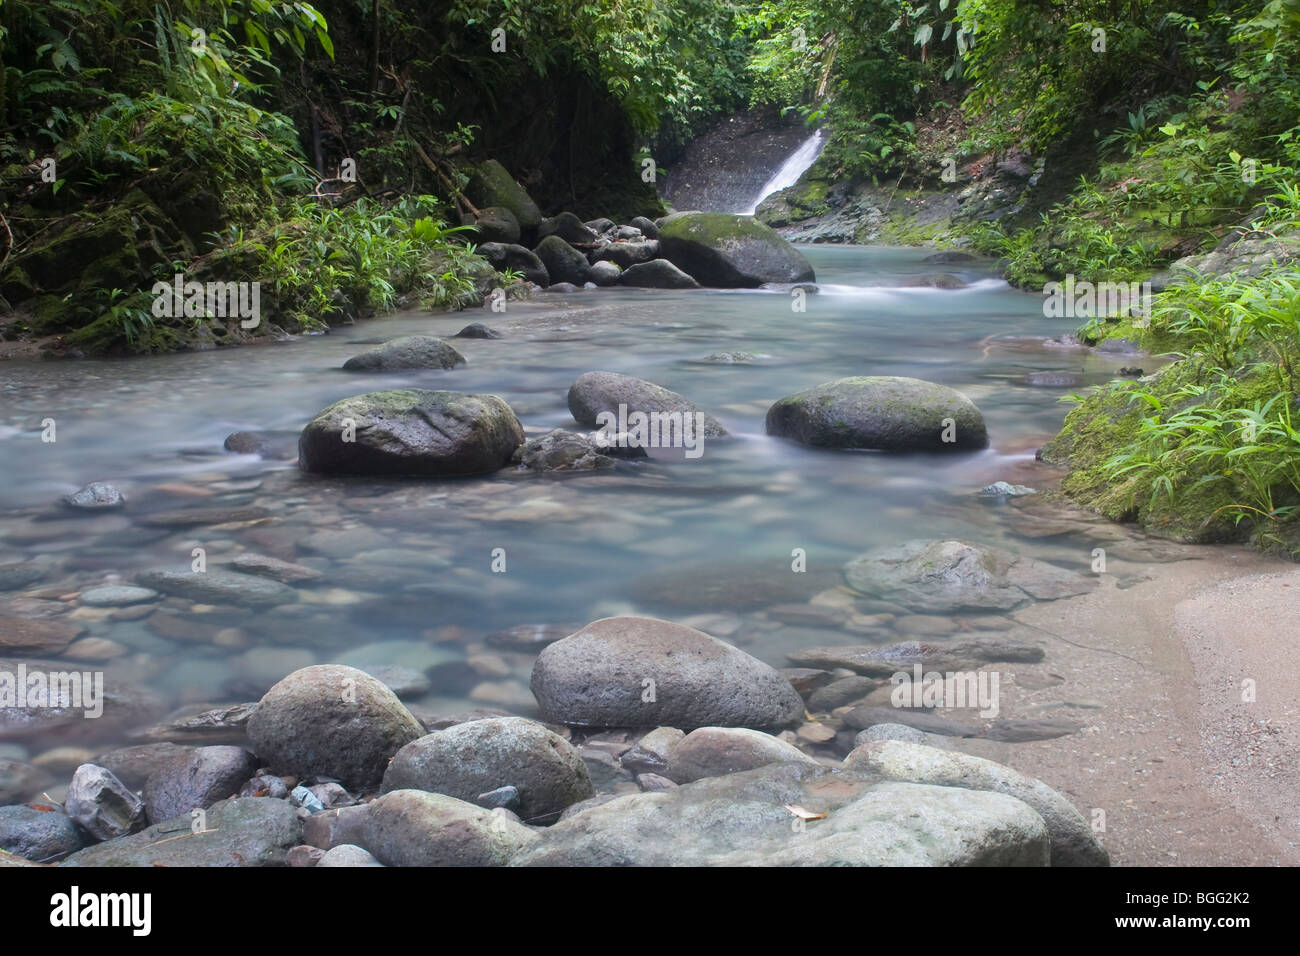 Luxuriante forêt tropicale et de la chute d'eau. Photographié dans le Darien, le Panama. Banque D'Images